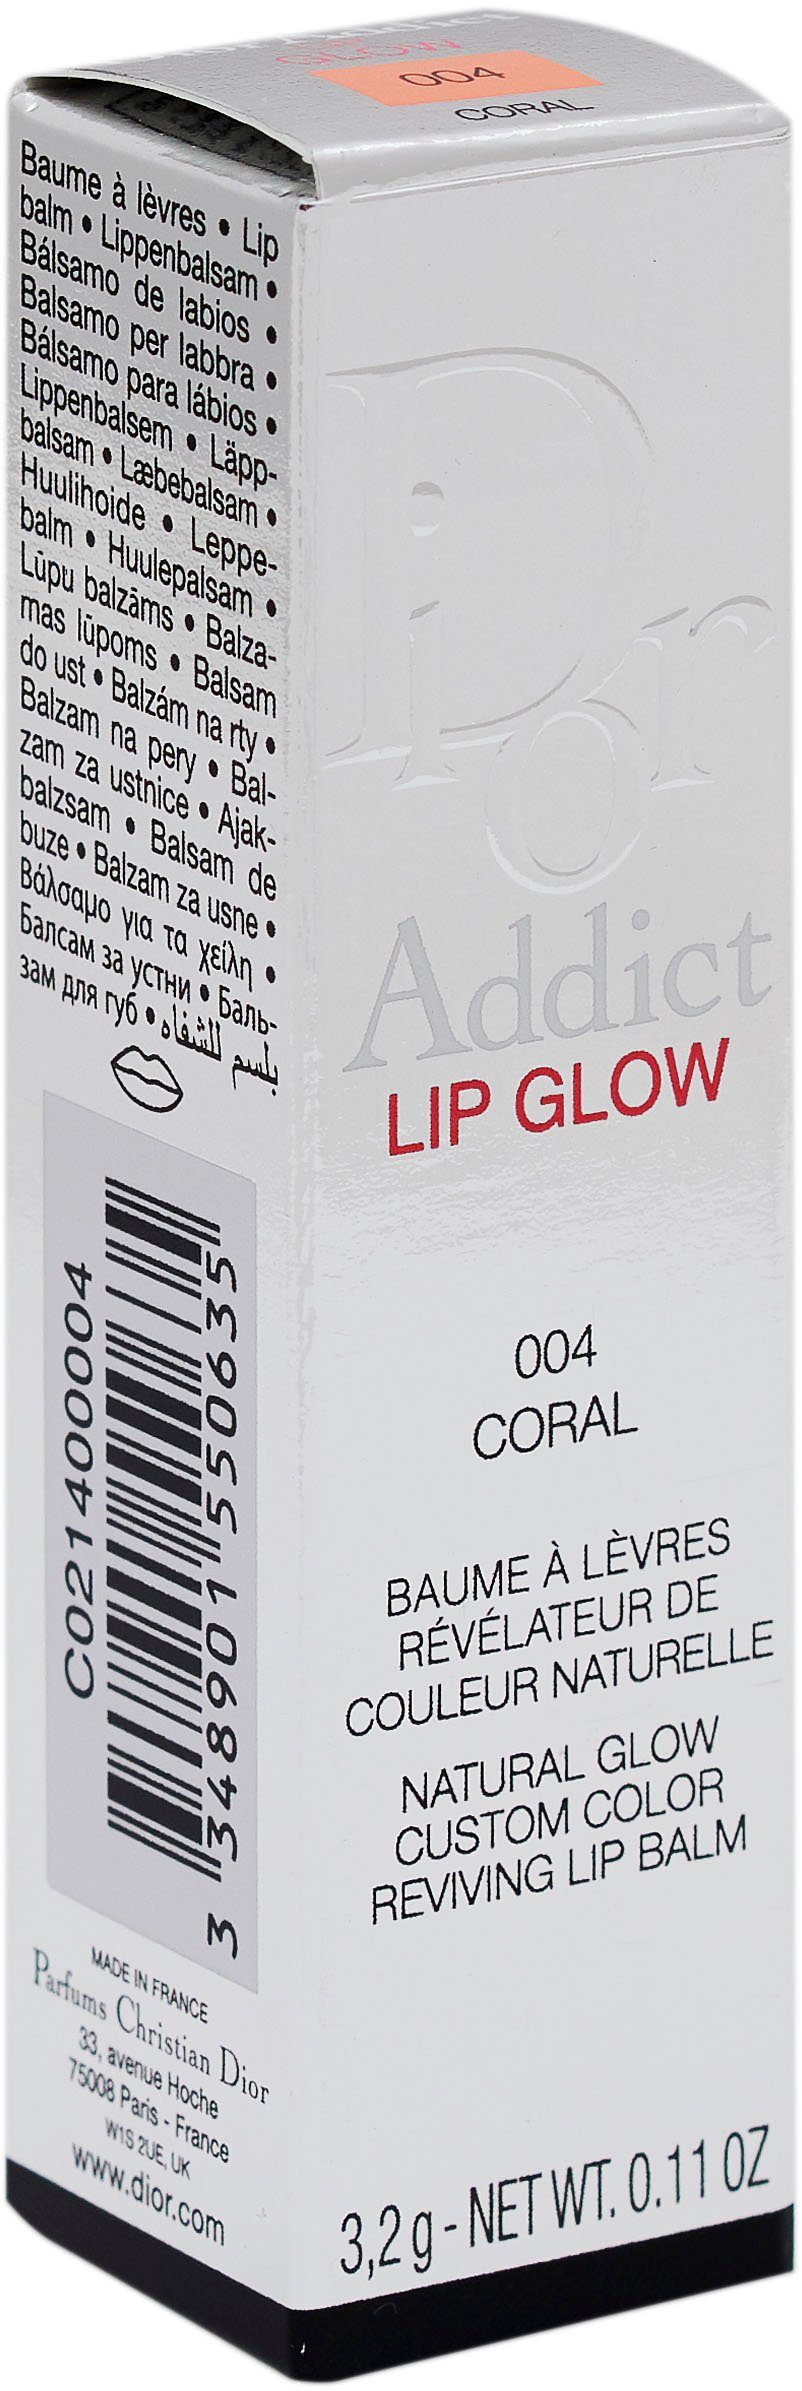 Lip 004 Lippenbalsam Coral Glow Addict Dior Dior